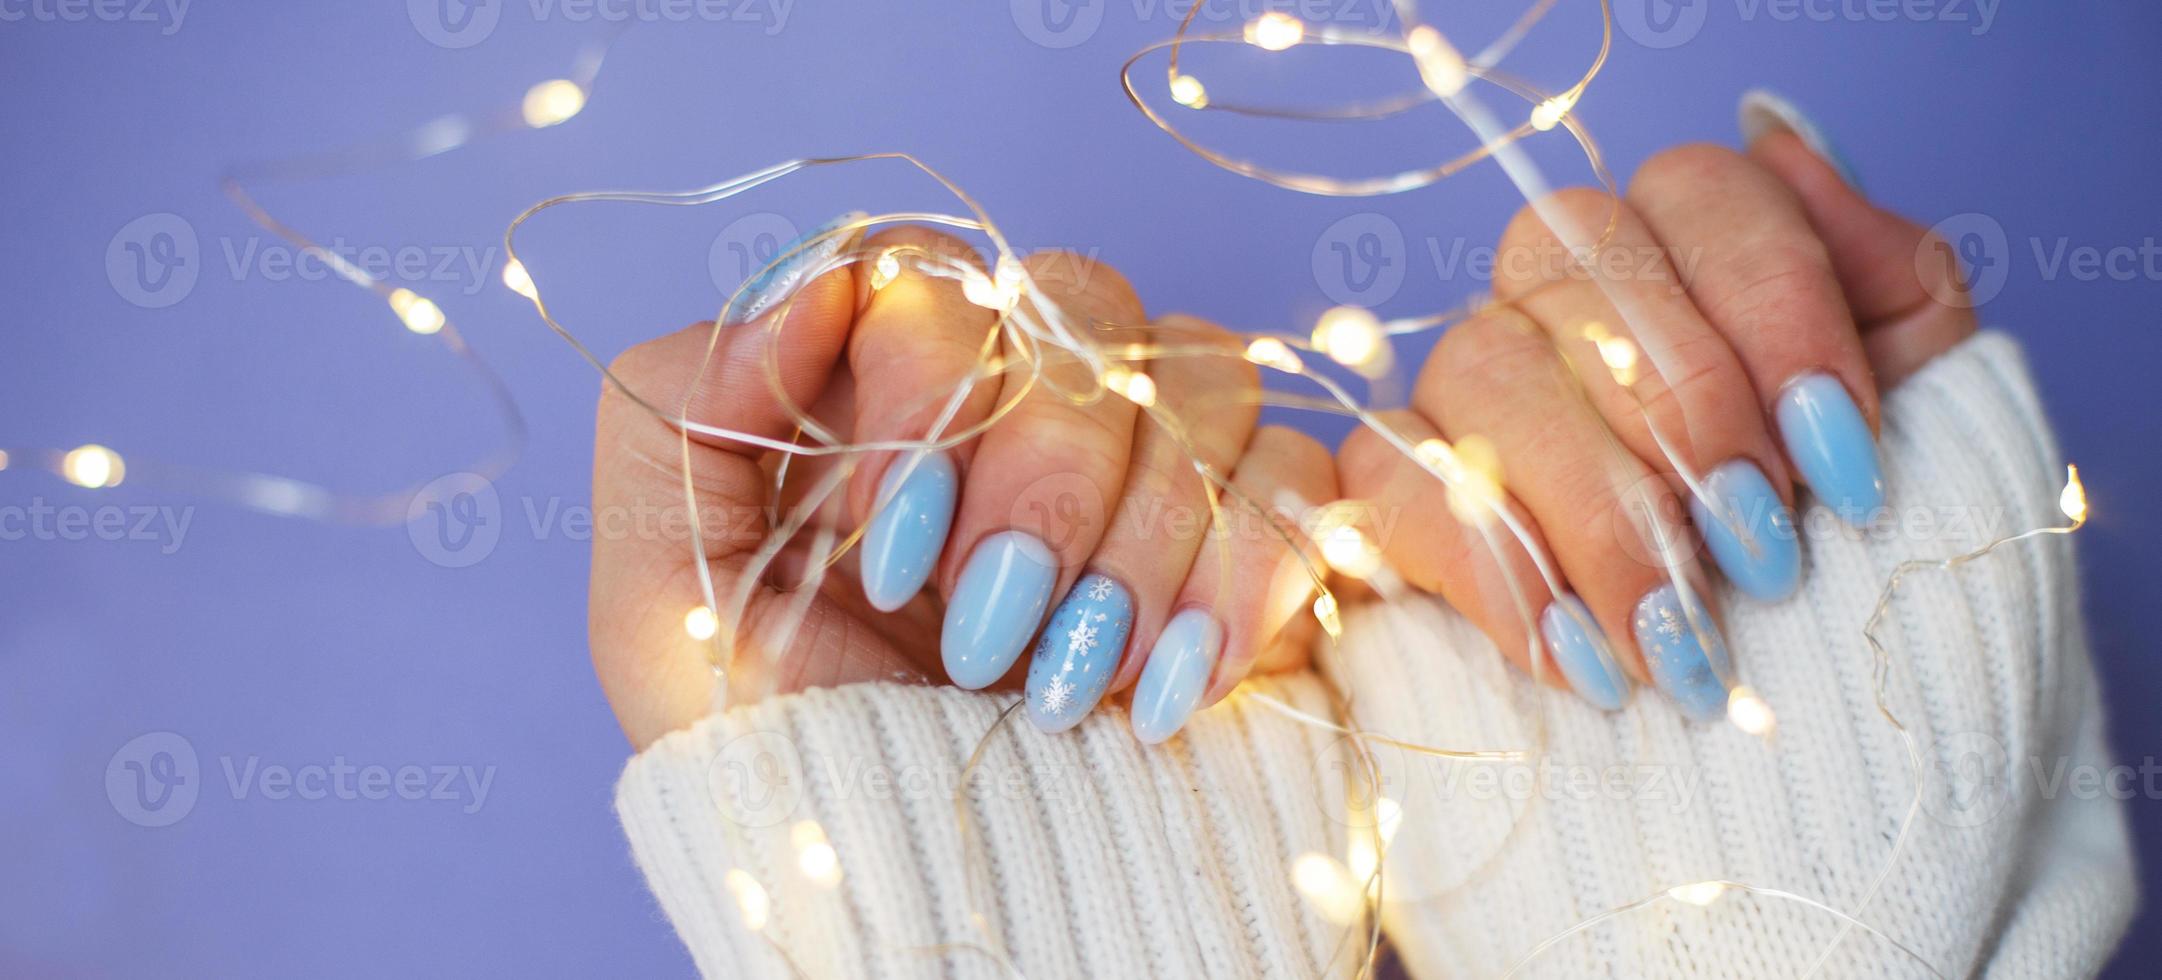 gemütliche nägel mit wintermaniküre mit schneeflocken und lichtern auf lila hintergrund foto